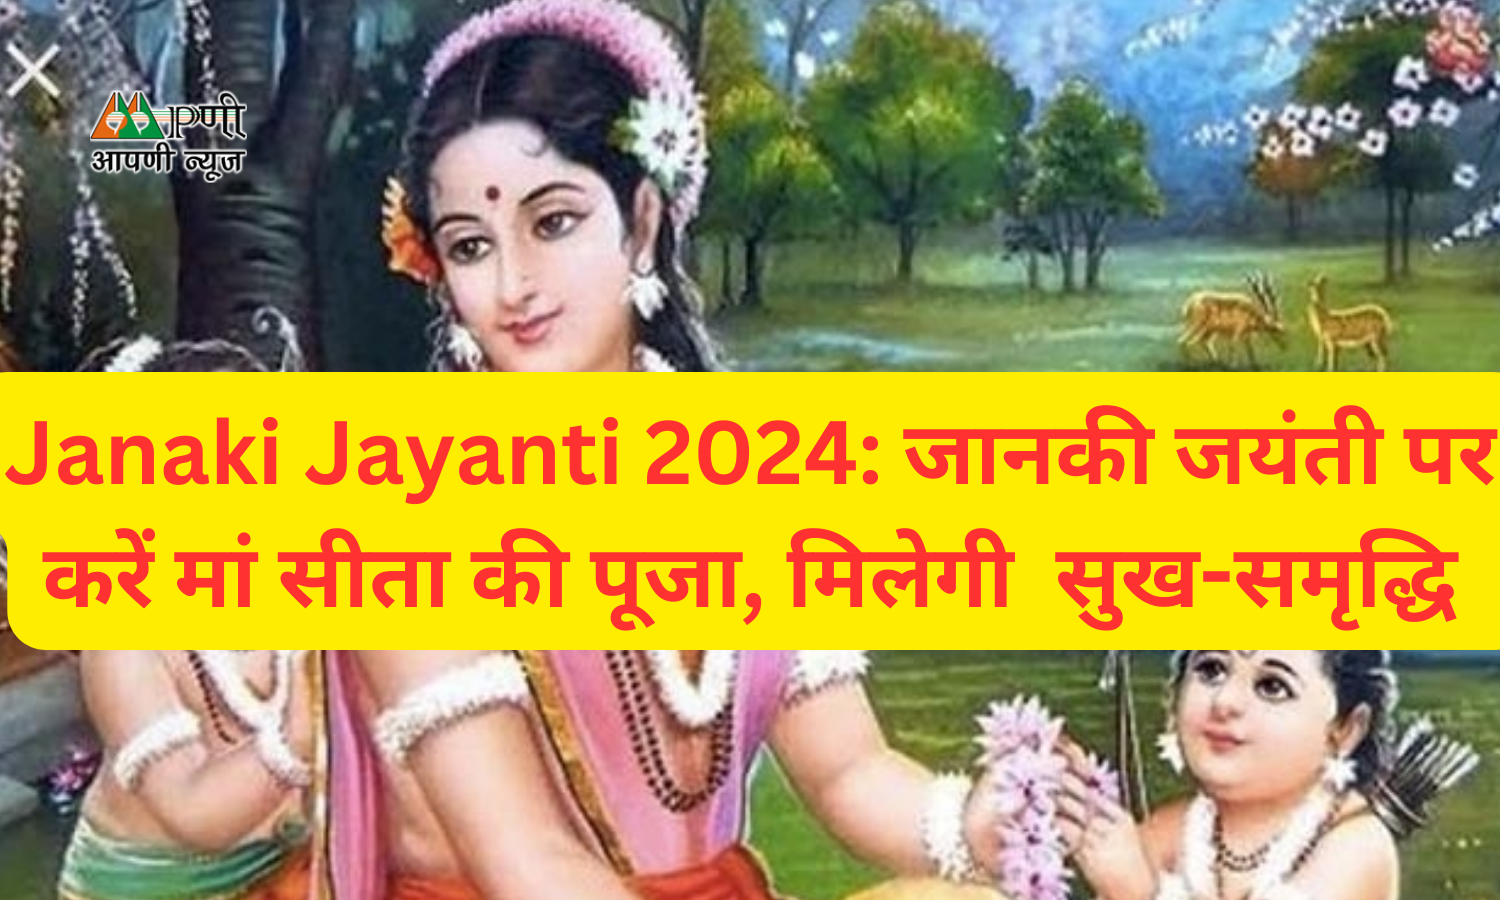 Janaki Jayanti 2024: जानकी जयंती पर करें मां सीता की पूजा, मिलेगी  सुख-समृद्धि